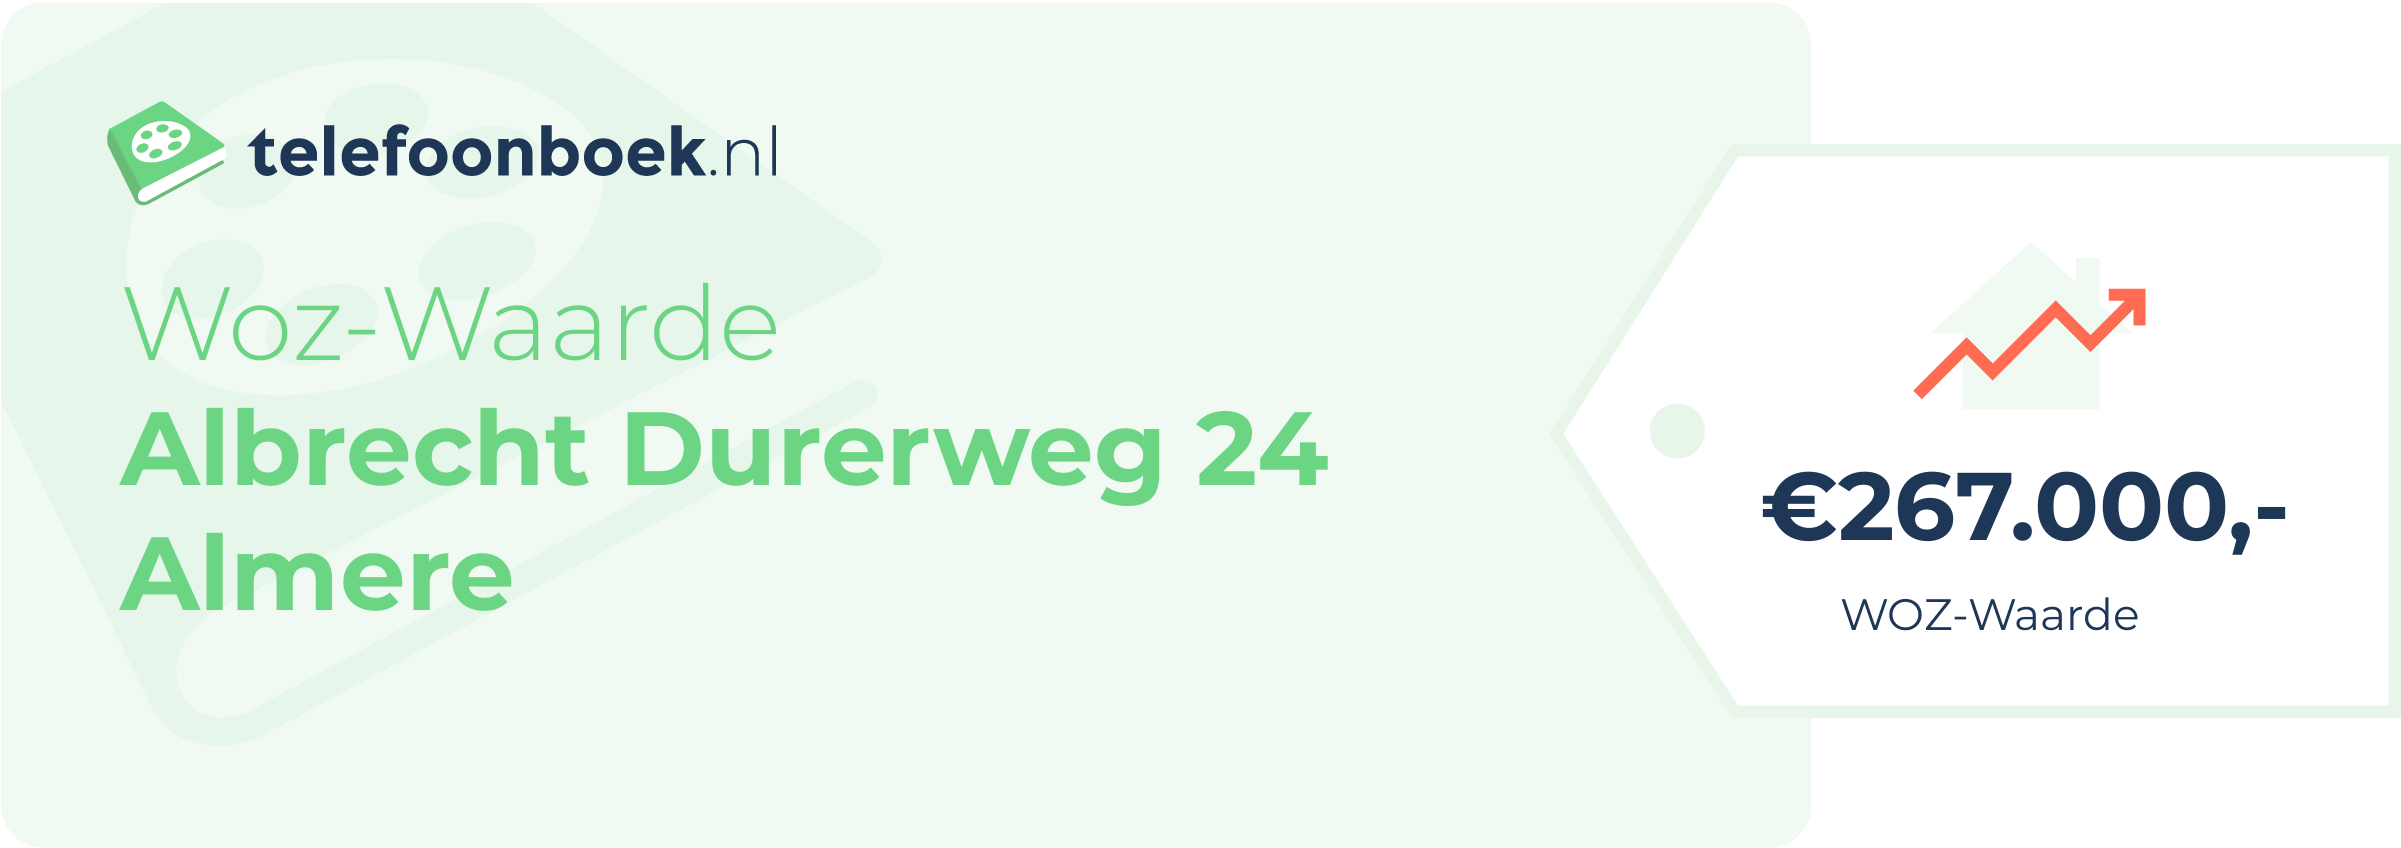 WOZ-waarde Albrecht Durerweg 24 Almere